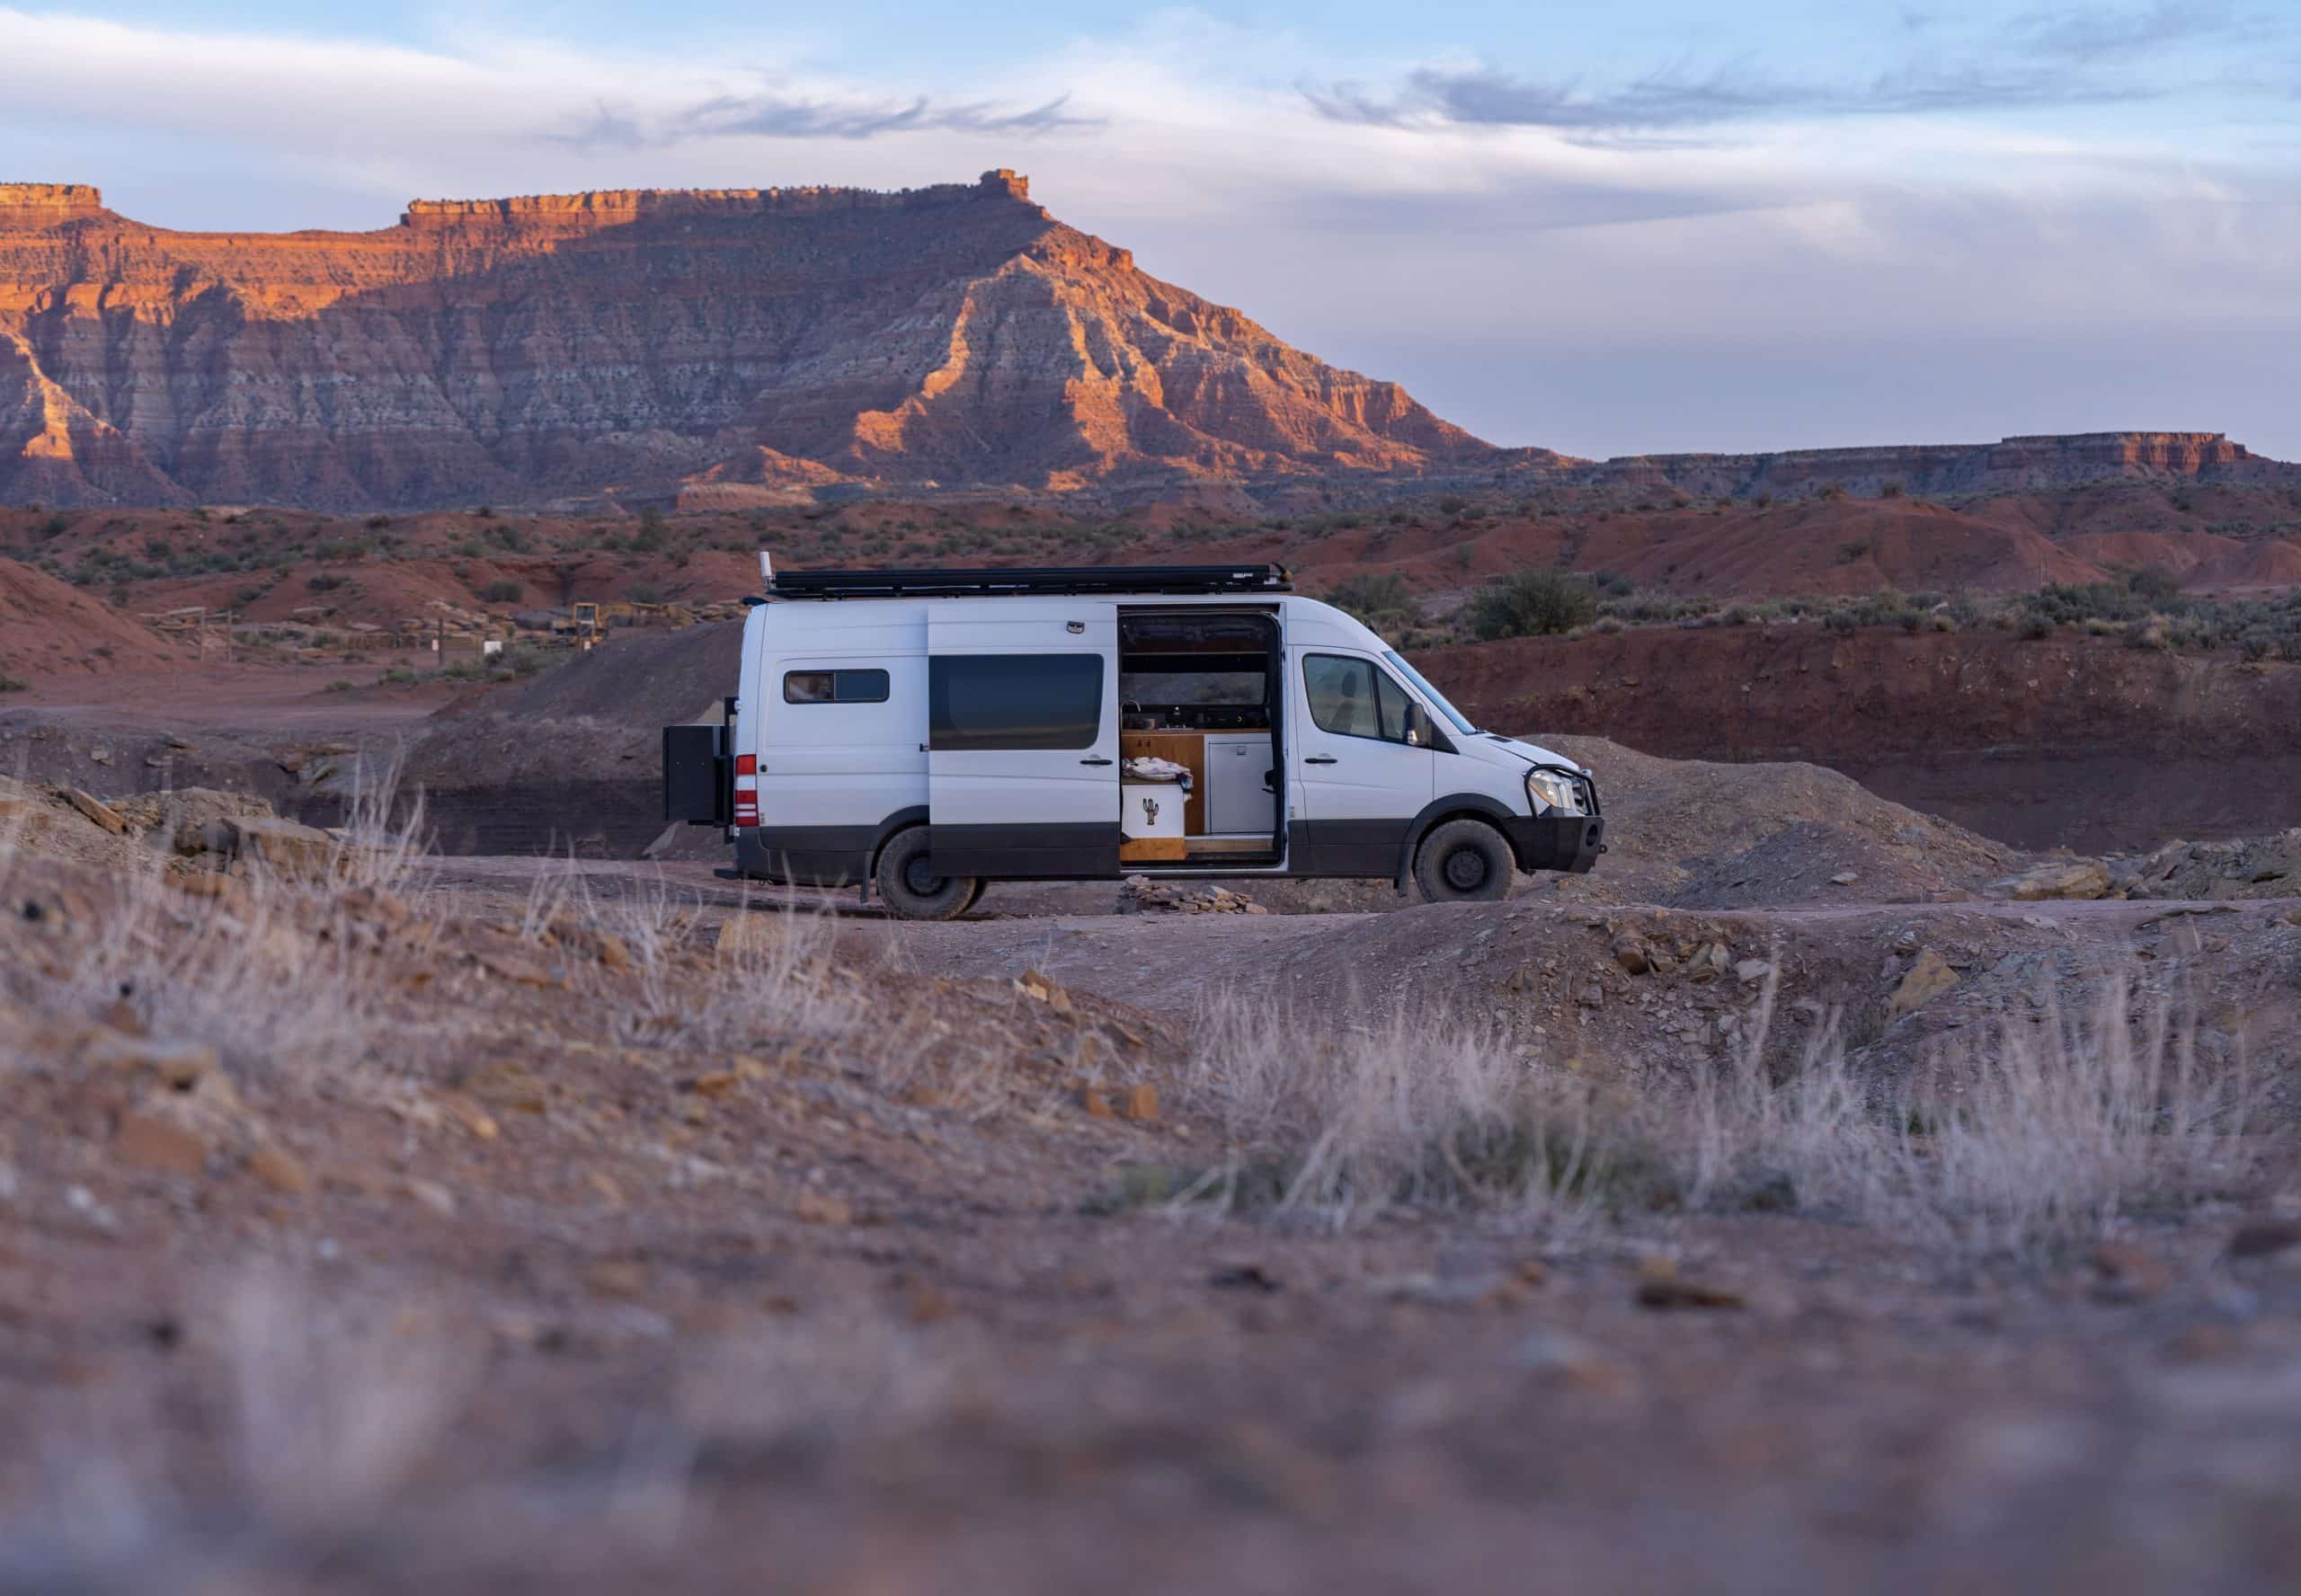 Desert Cruisers' Van in the Desert